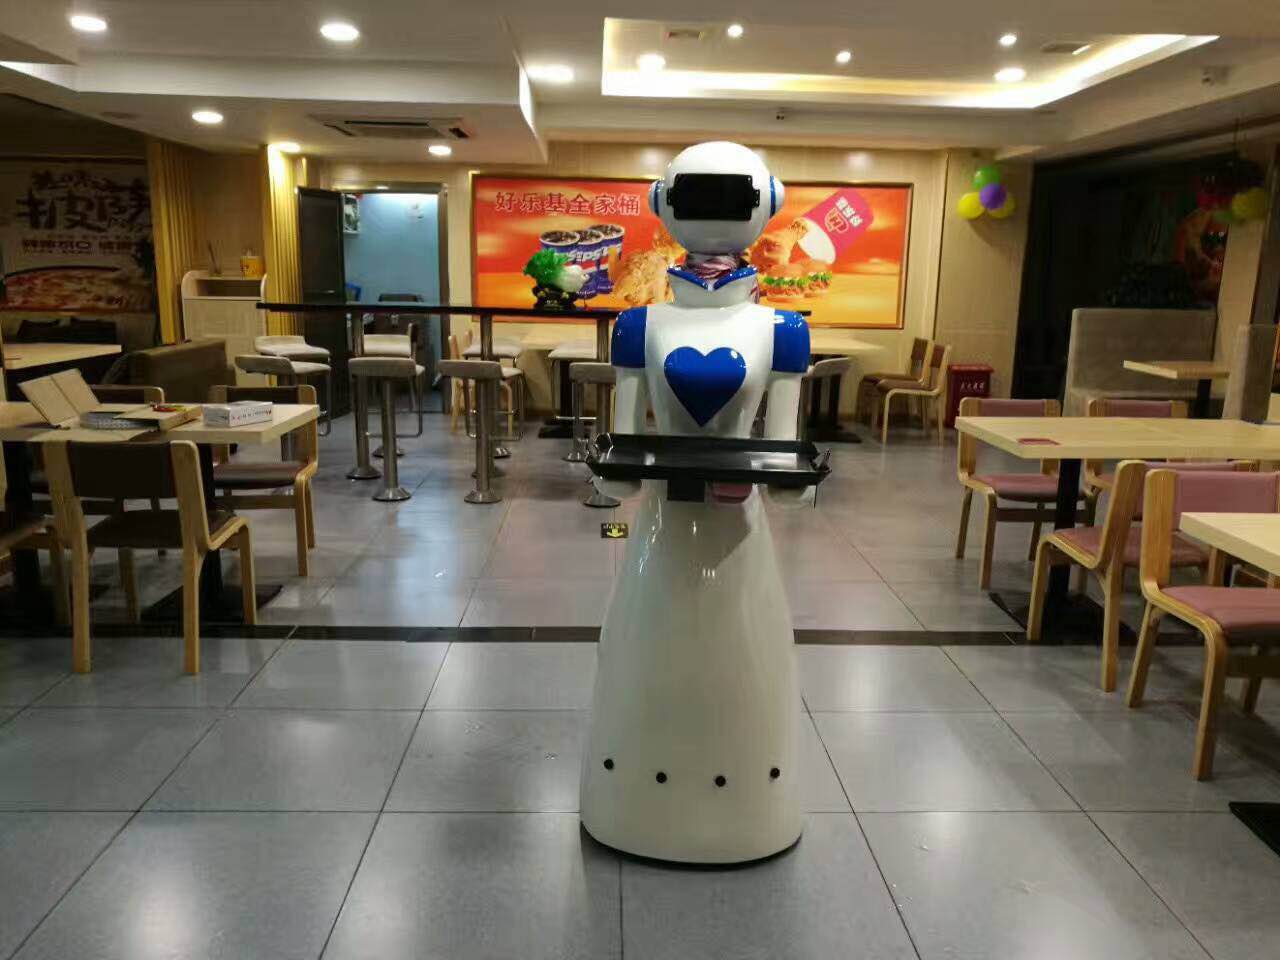 酒店餐厅机器人走进酒店撩出新高度